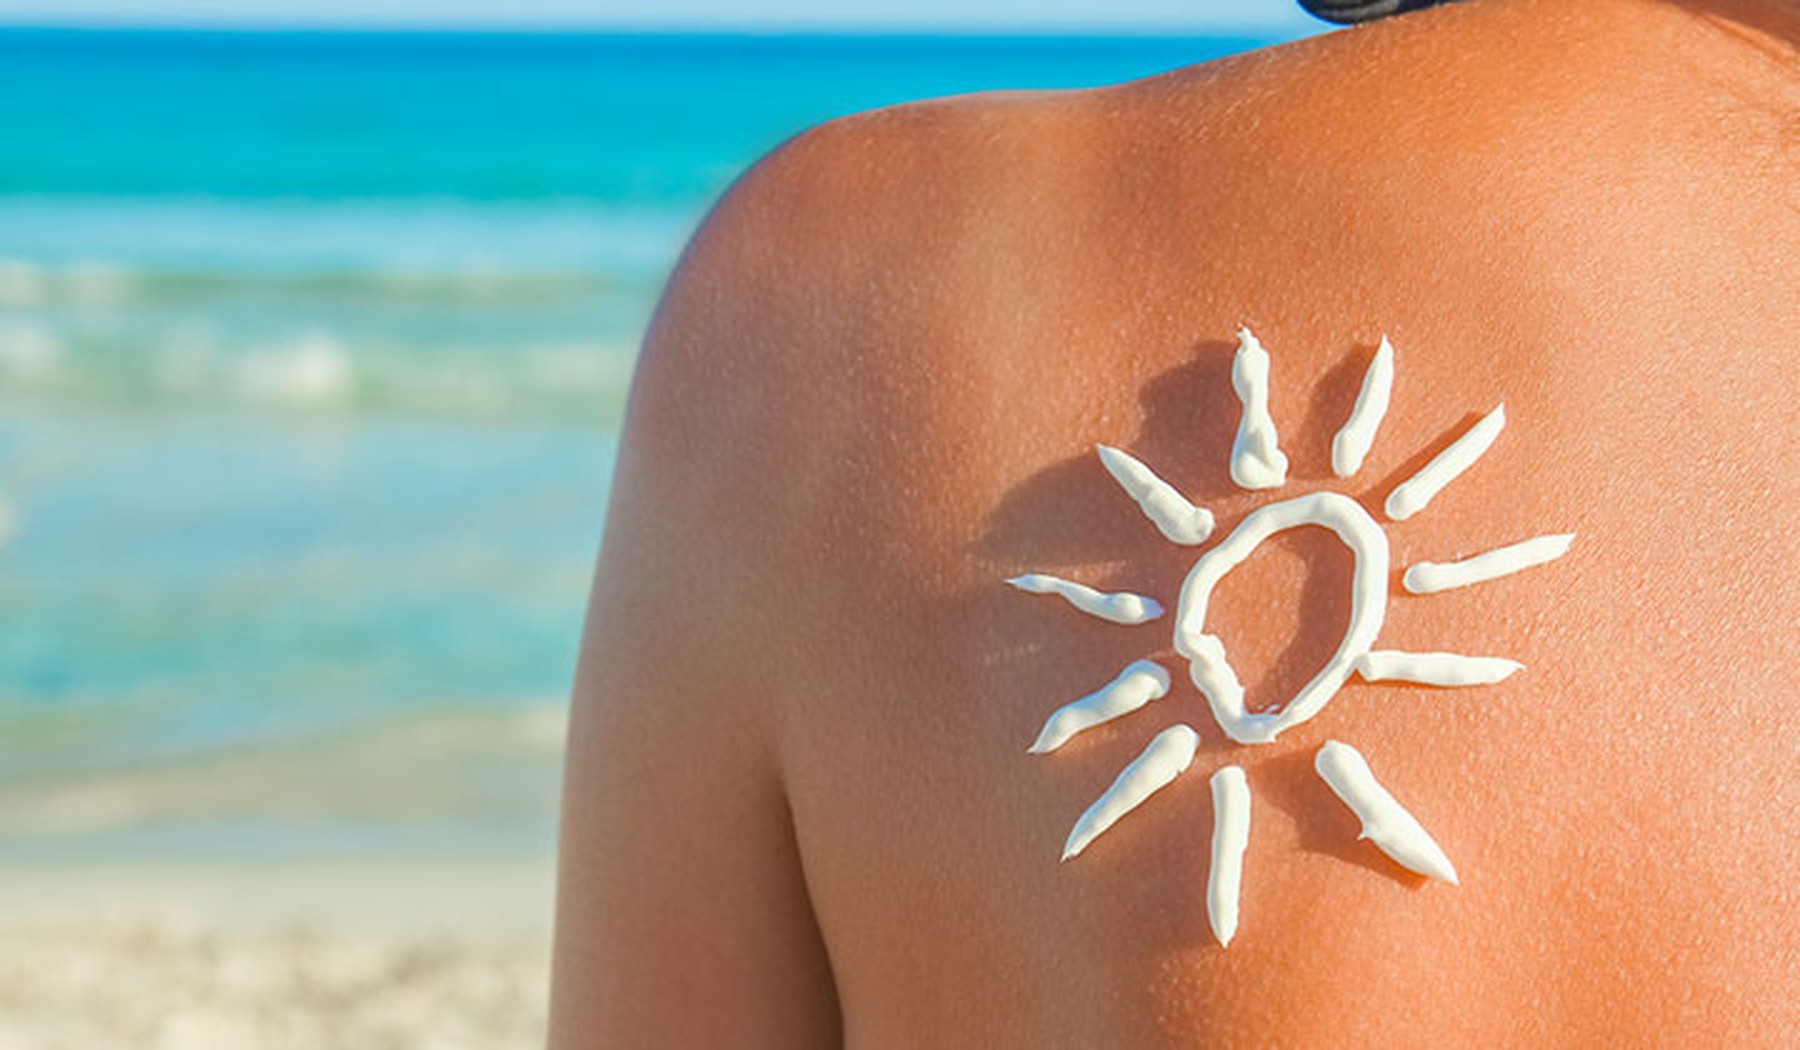 Espalda de una mujer con marcas de moreno y un sol dibujado con crema solar. De fondo se ve el mar.